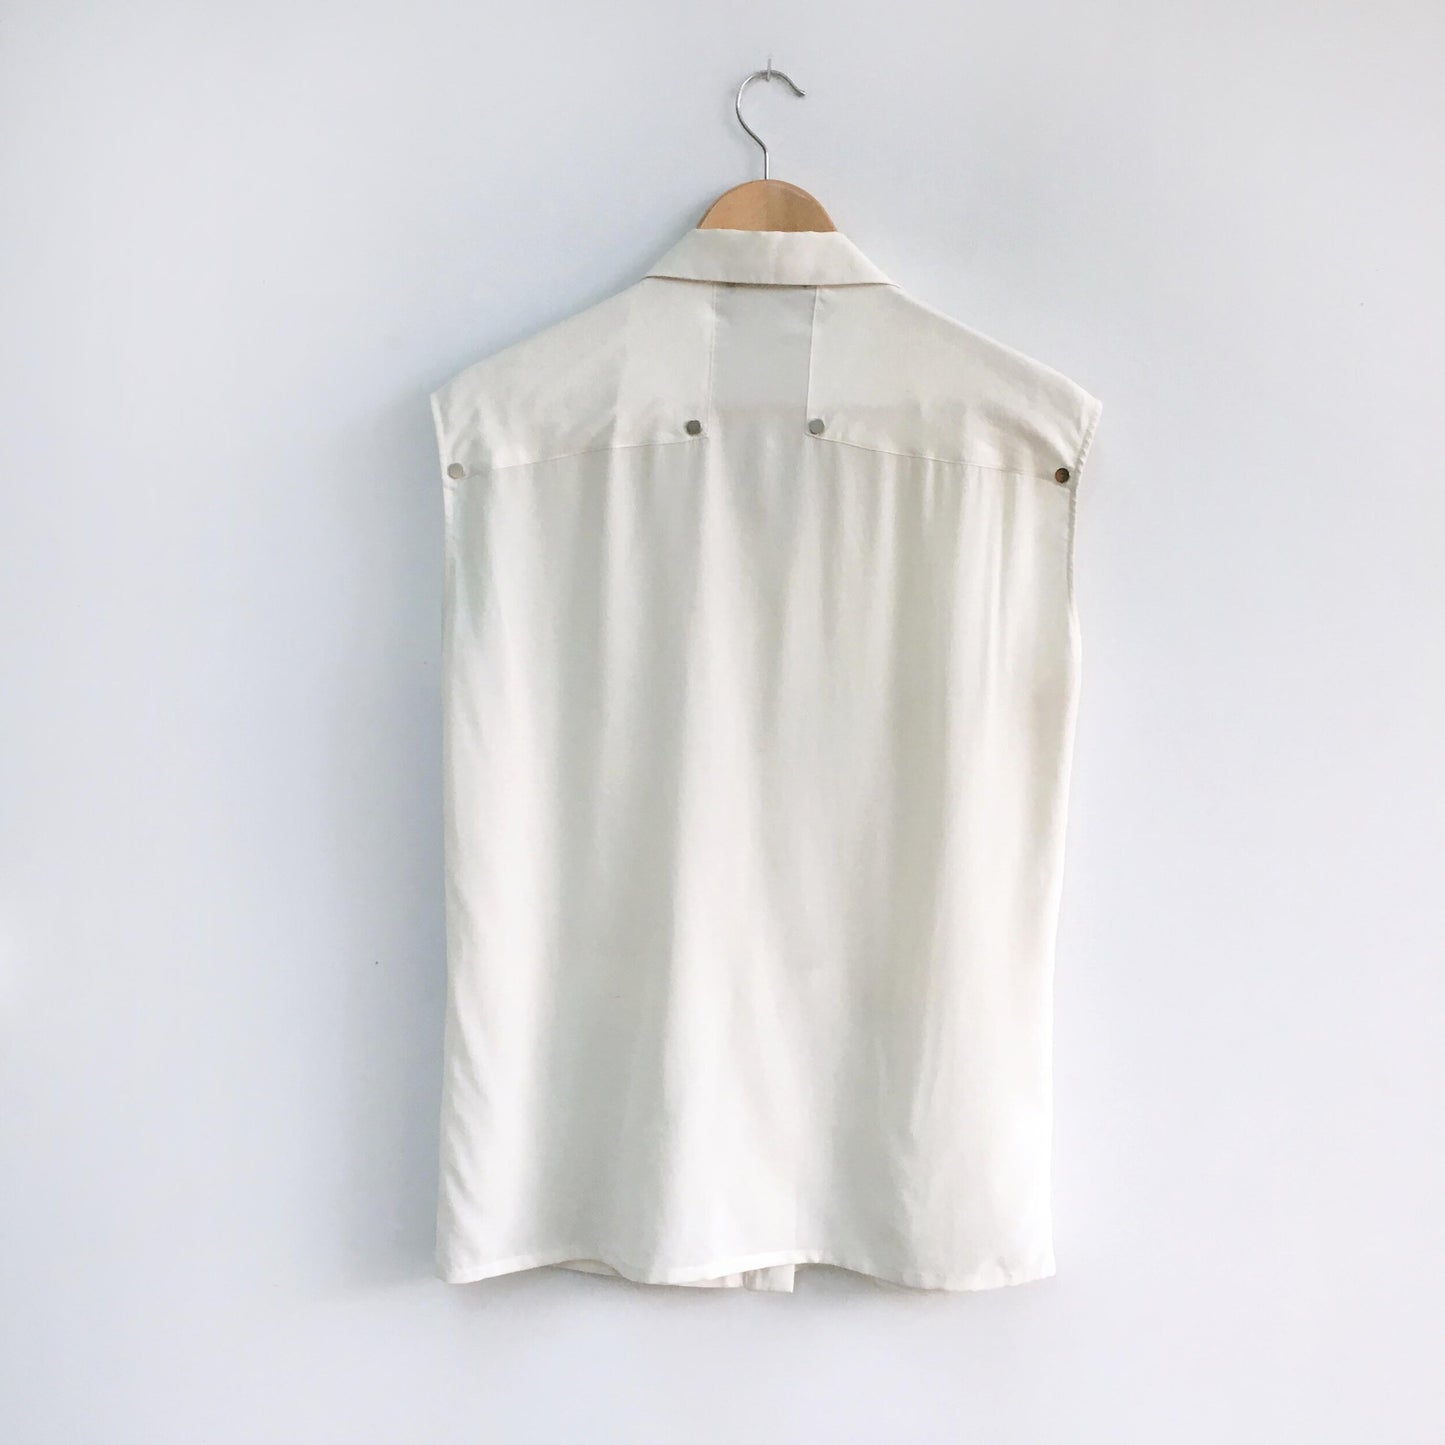 anthony vaccarello silk sleeveless utility blouse - size medium